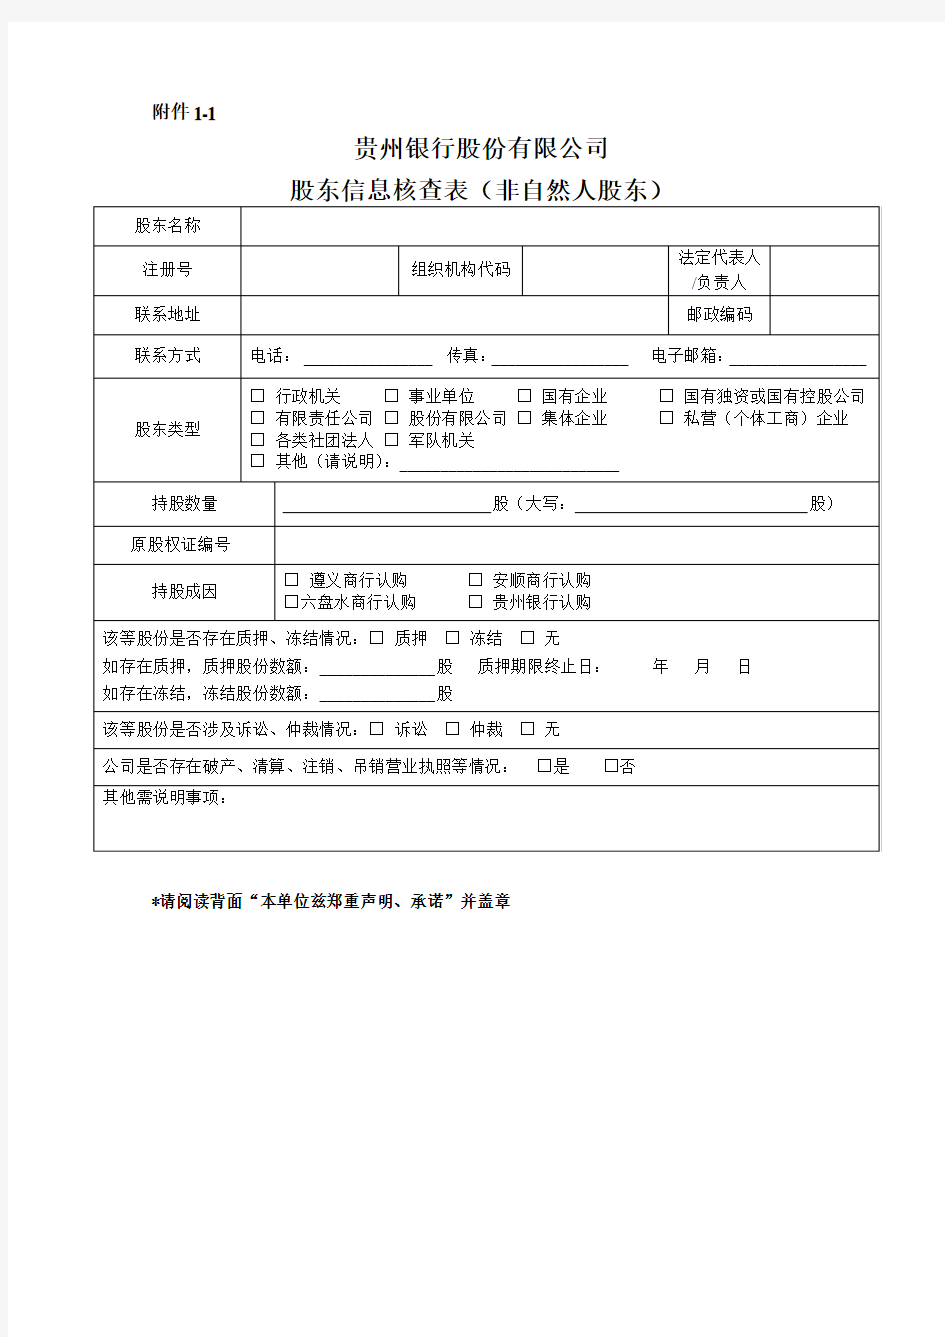 贵州银行股东信息核查表(非自然人股东)